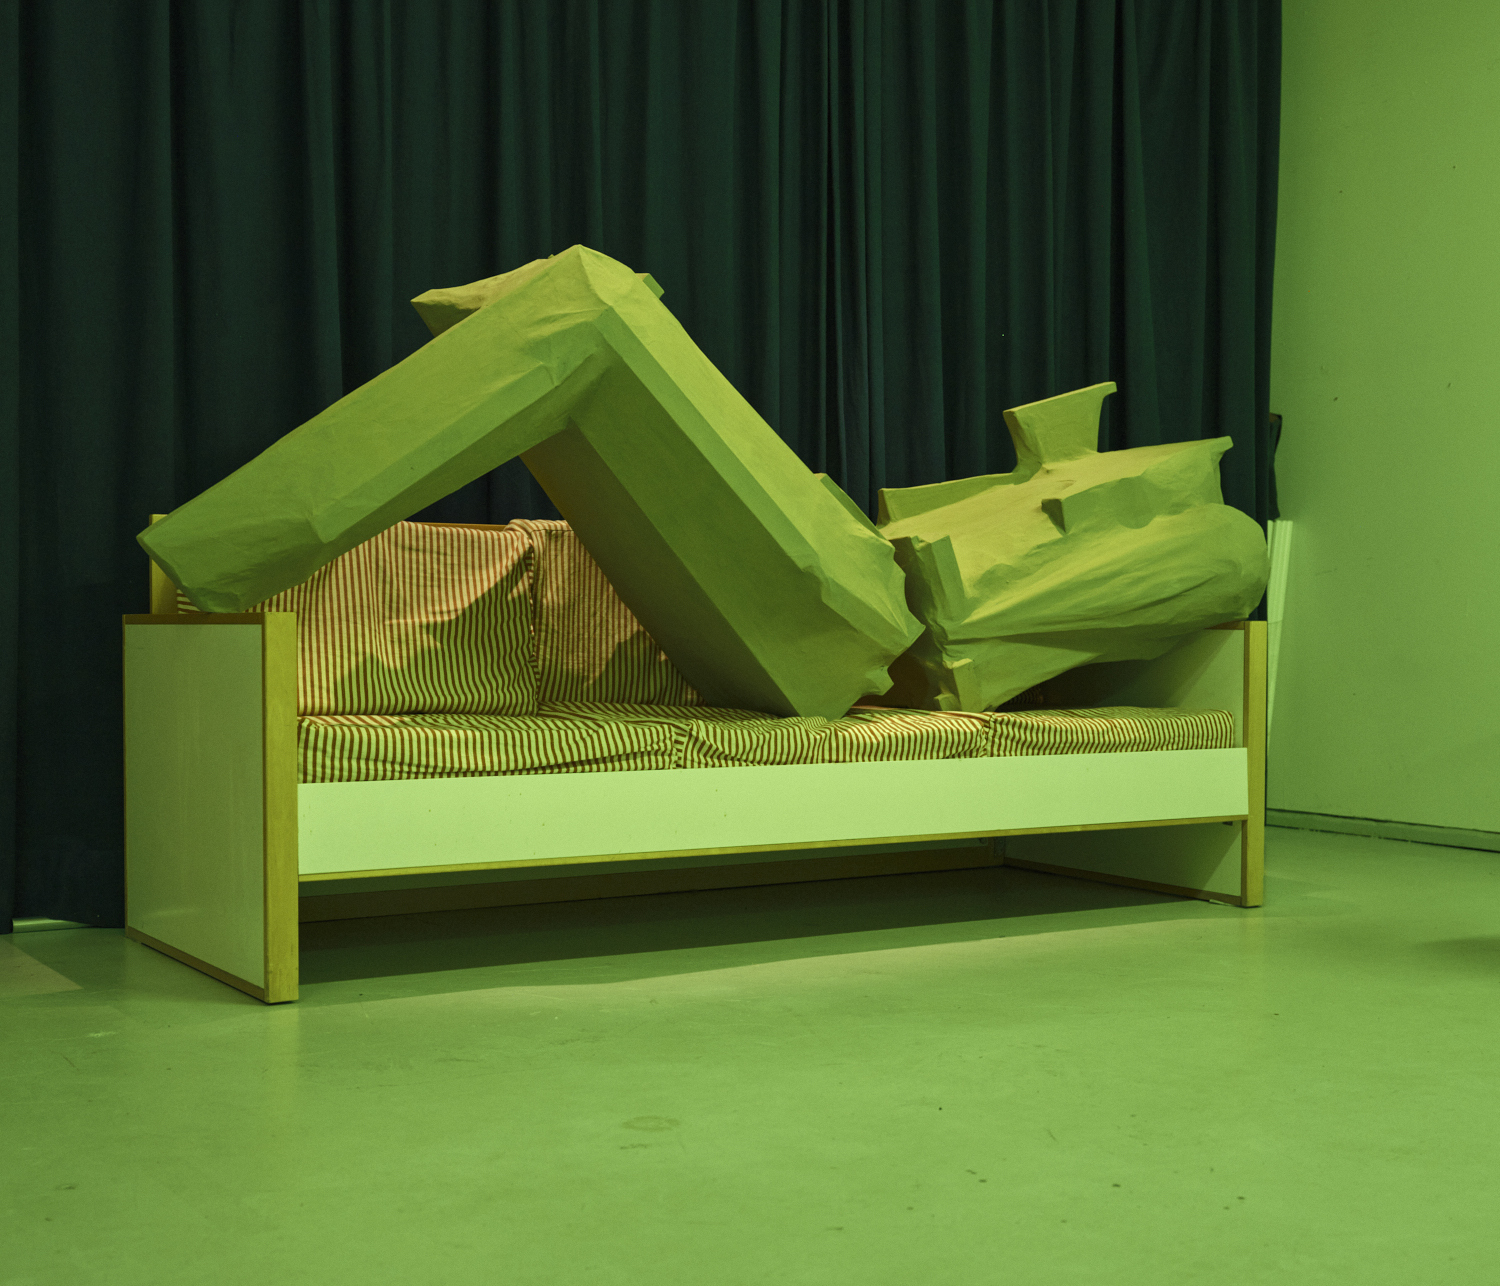 Oire by Hermanni Saarinen: Wood, cotton, acid free paper, glue paint, 241 cm x 80 cm x 79 cm, 2020